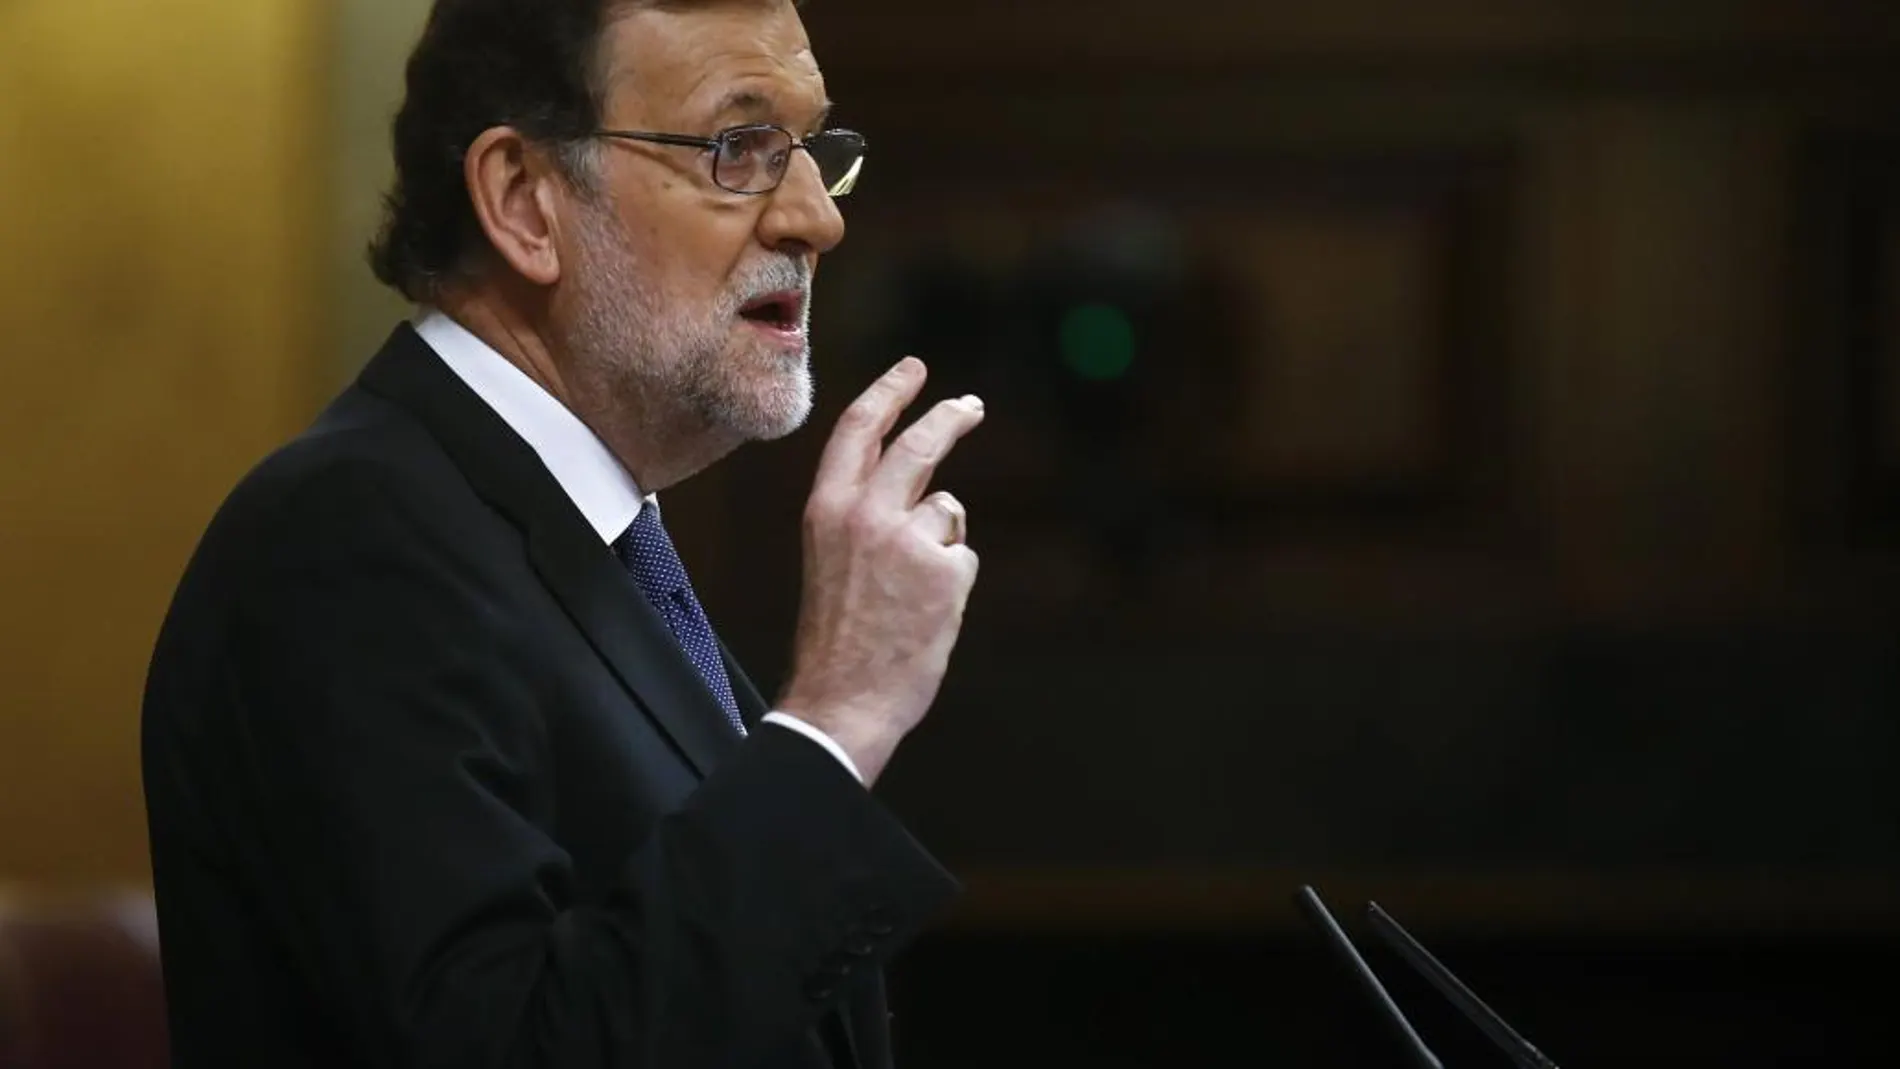 El presidente del Gobierno en funciones, Mariano Rajoy, comparece para informar de los resultados de la Cumbre de la UE que abordó la situación de los refugiados en Europa